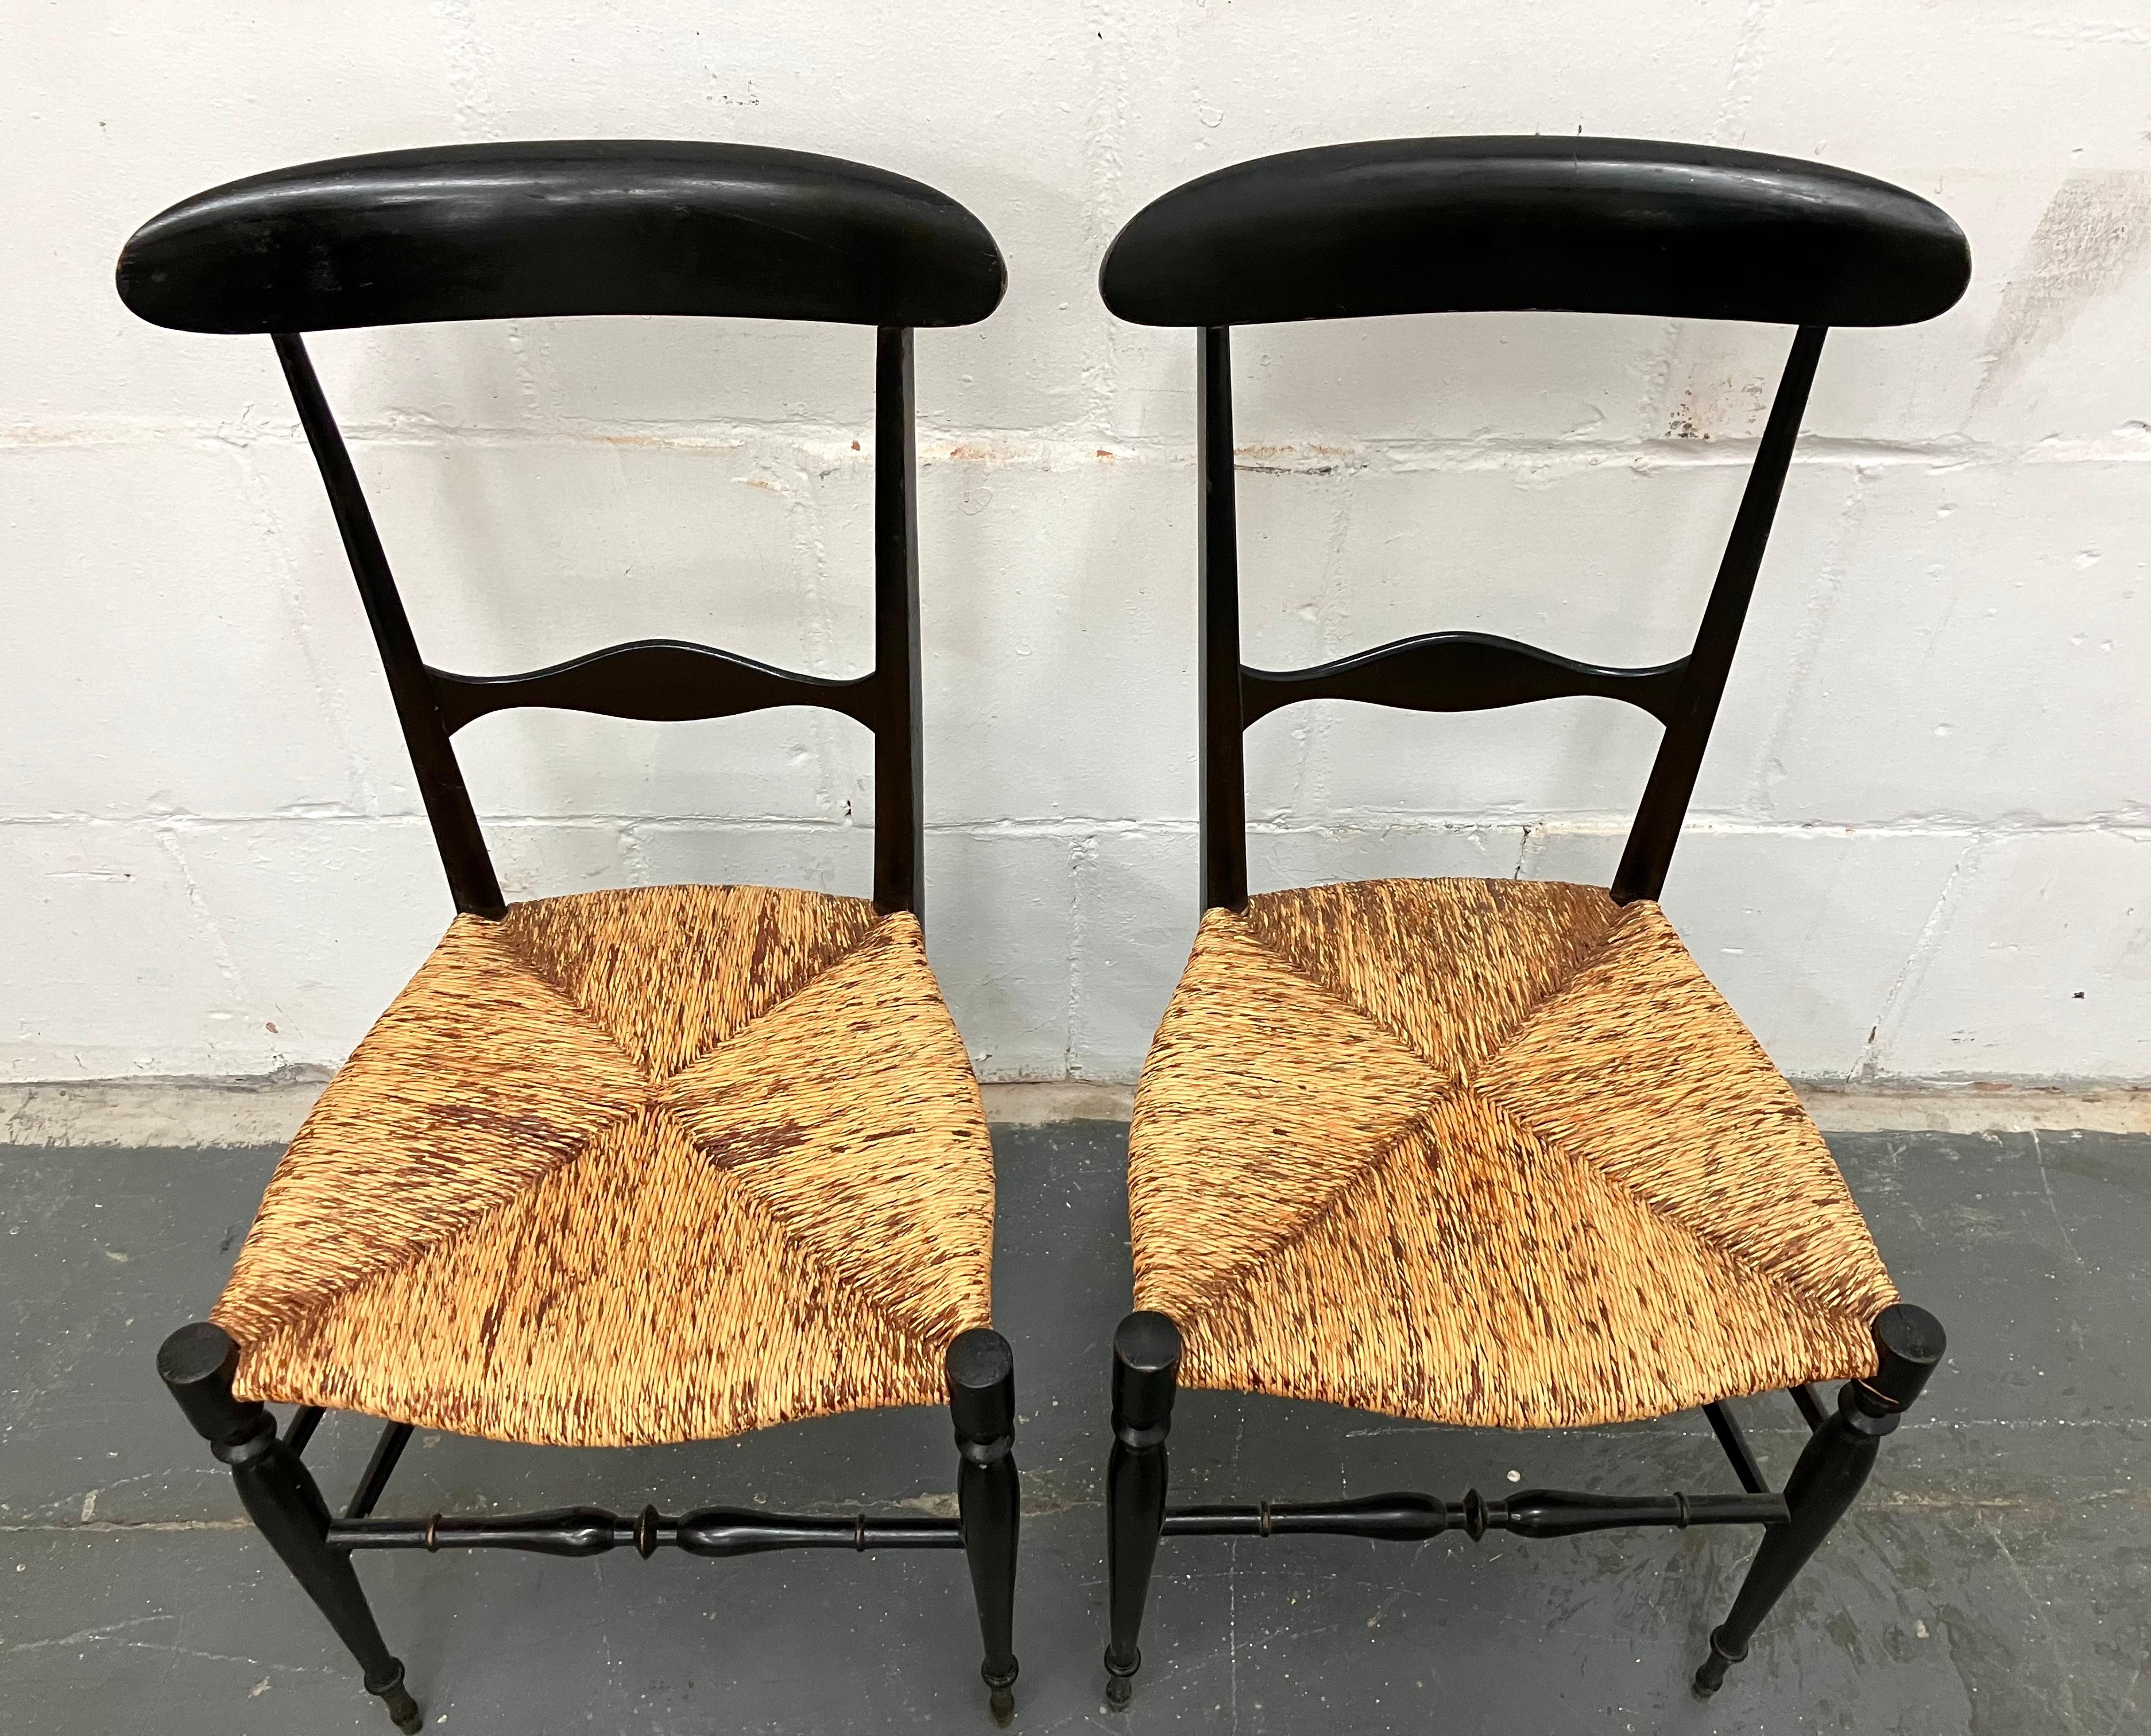 Paar leichte und elegante Chiavari-Esszimmerstühle aus den 1940er Jahren. Der ursprüngliche Entwurf stammt aus dem frühen 19. Jahrhundert von Giuseppe Gaetano Descalzi. Lackiertes Holz mit originalen Binsen-Sitzen. Diese Version war das Modell, das